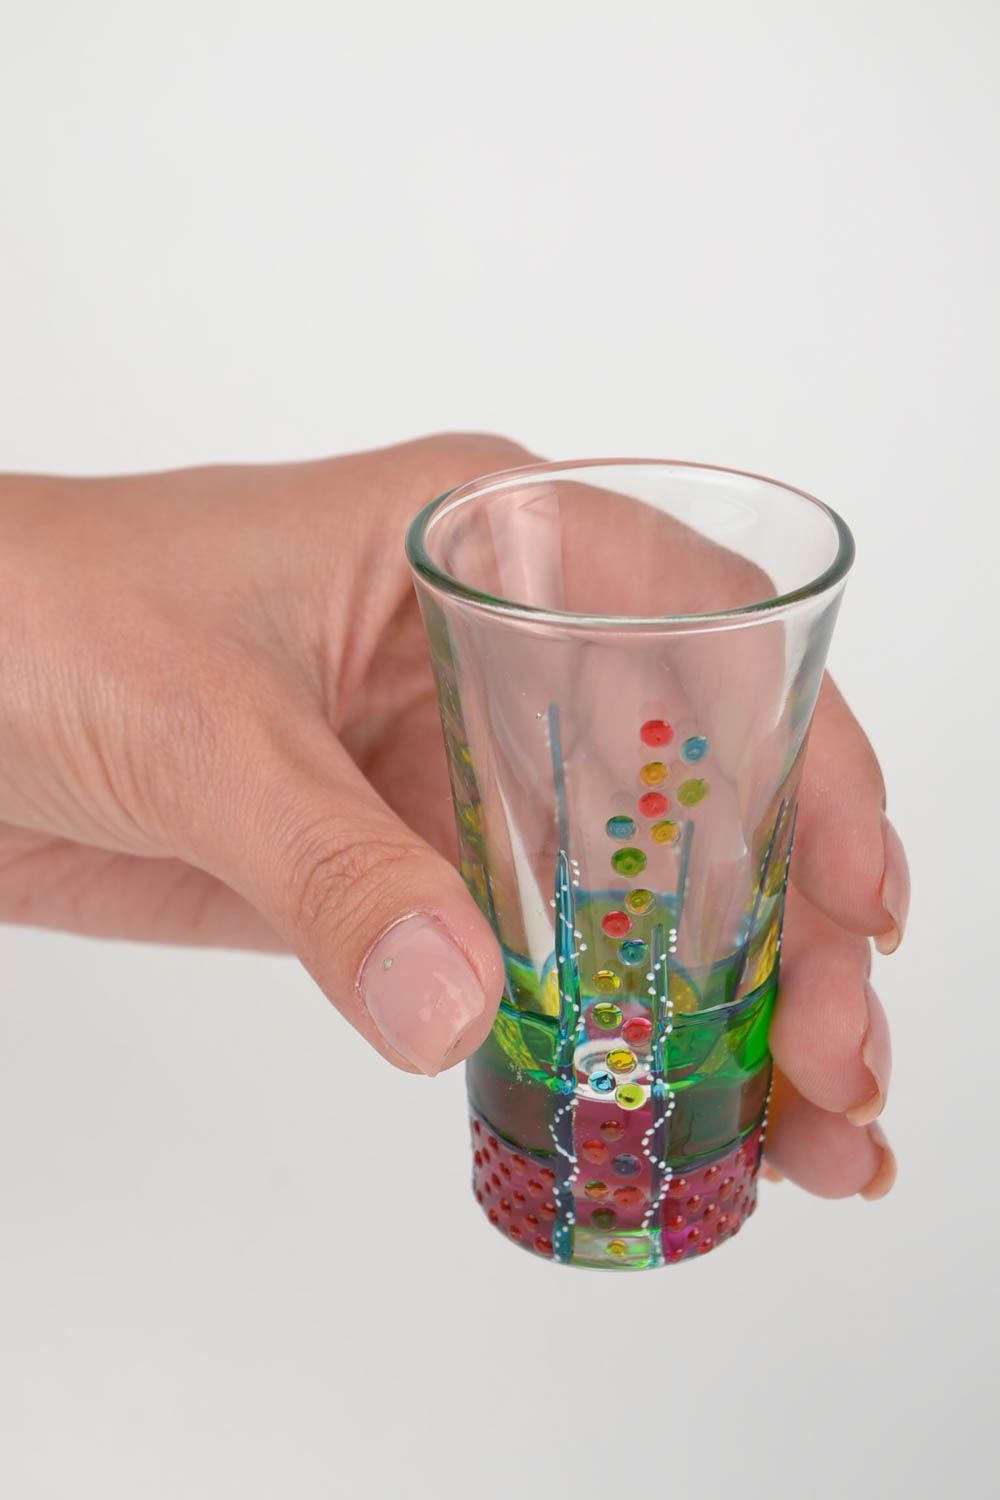 Handmade shot glasses designer glass tableware ideas for home decor photo 2